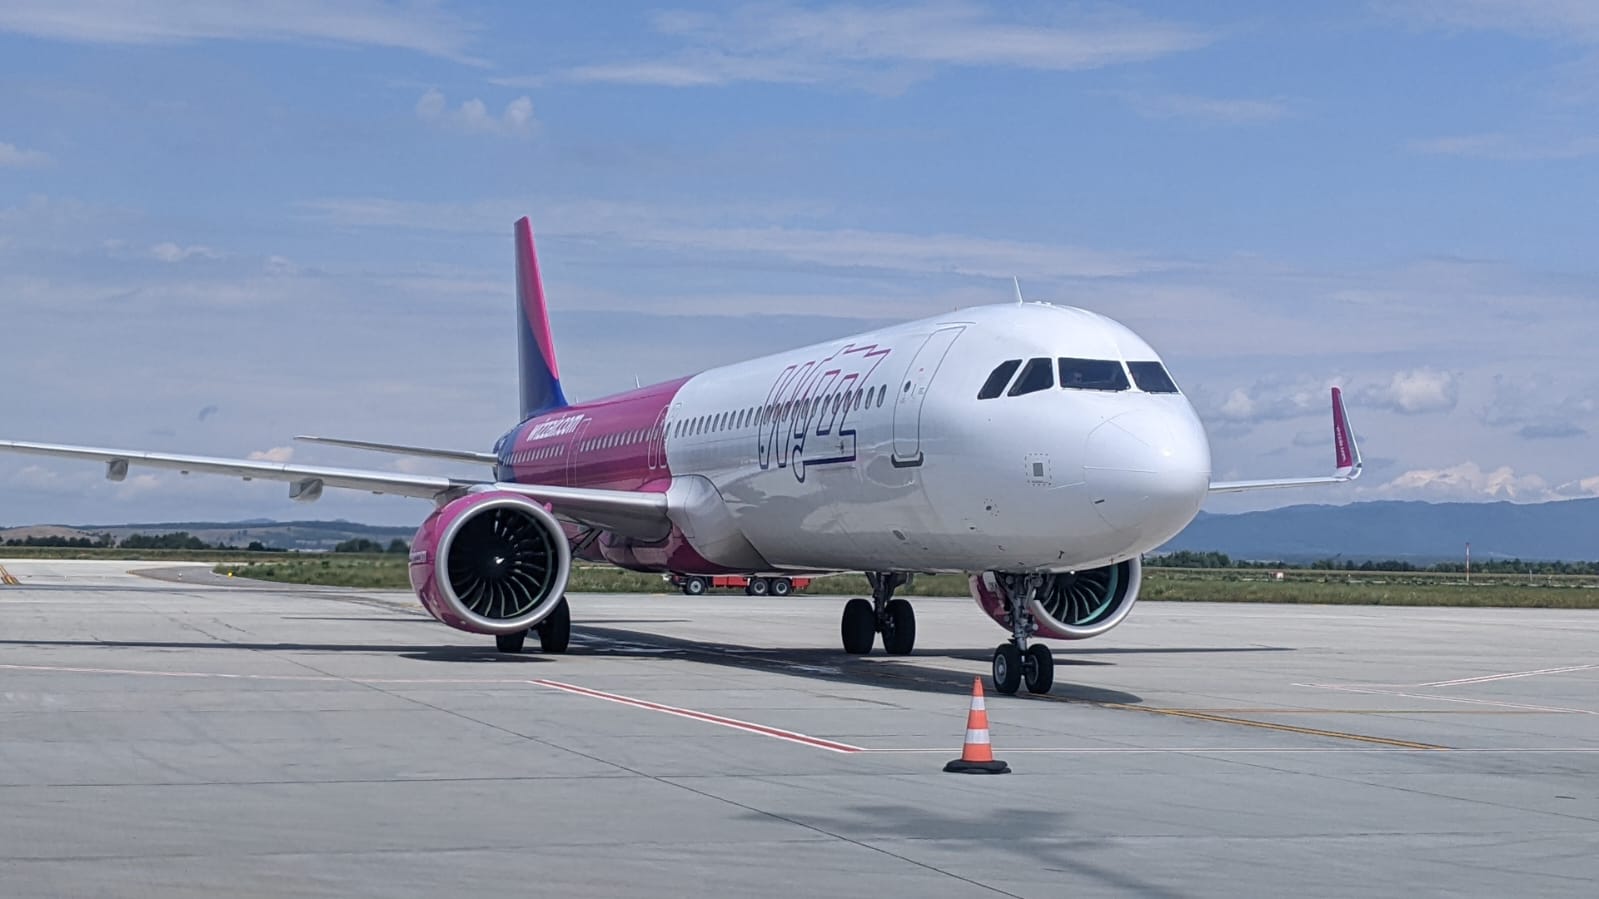 Atenţionare de călătorie: Perturbări ale zborurilor Wizz Air pe aeroportul londonez Luton